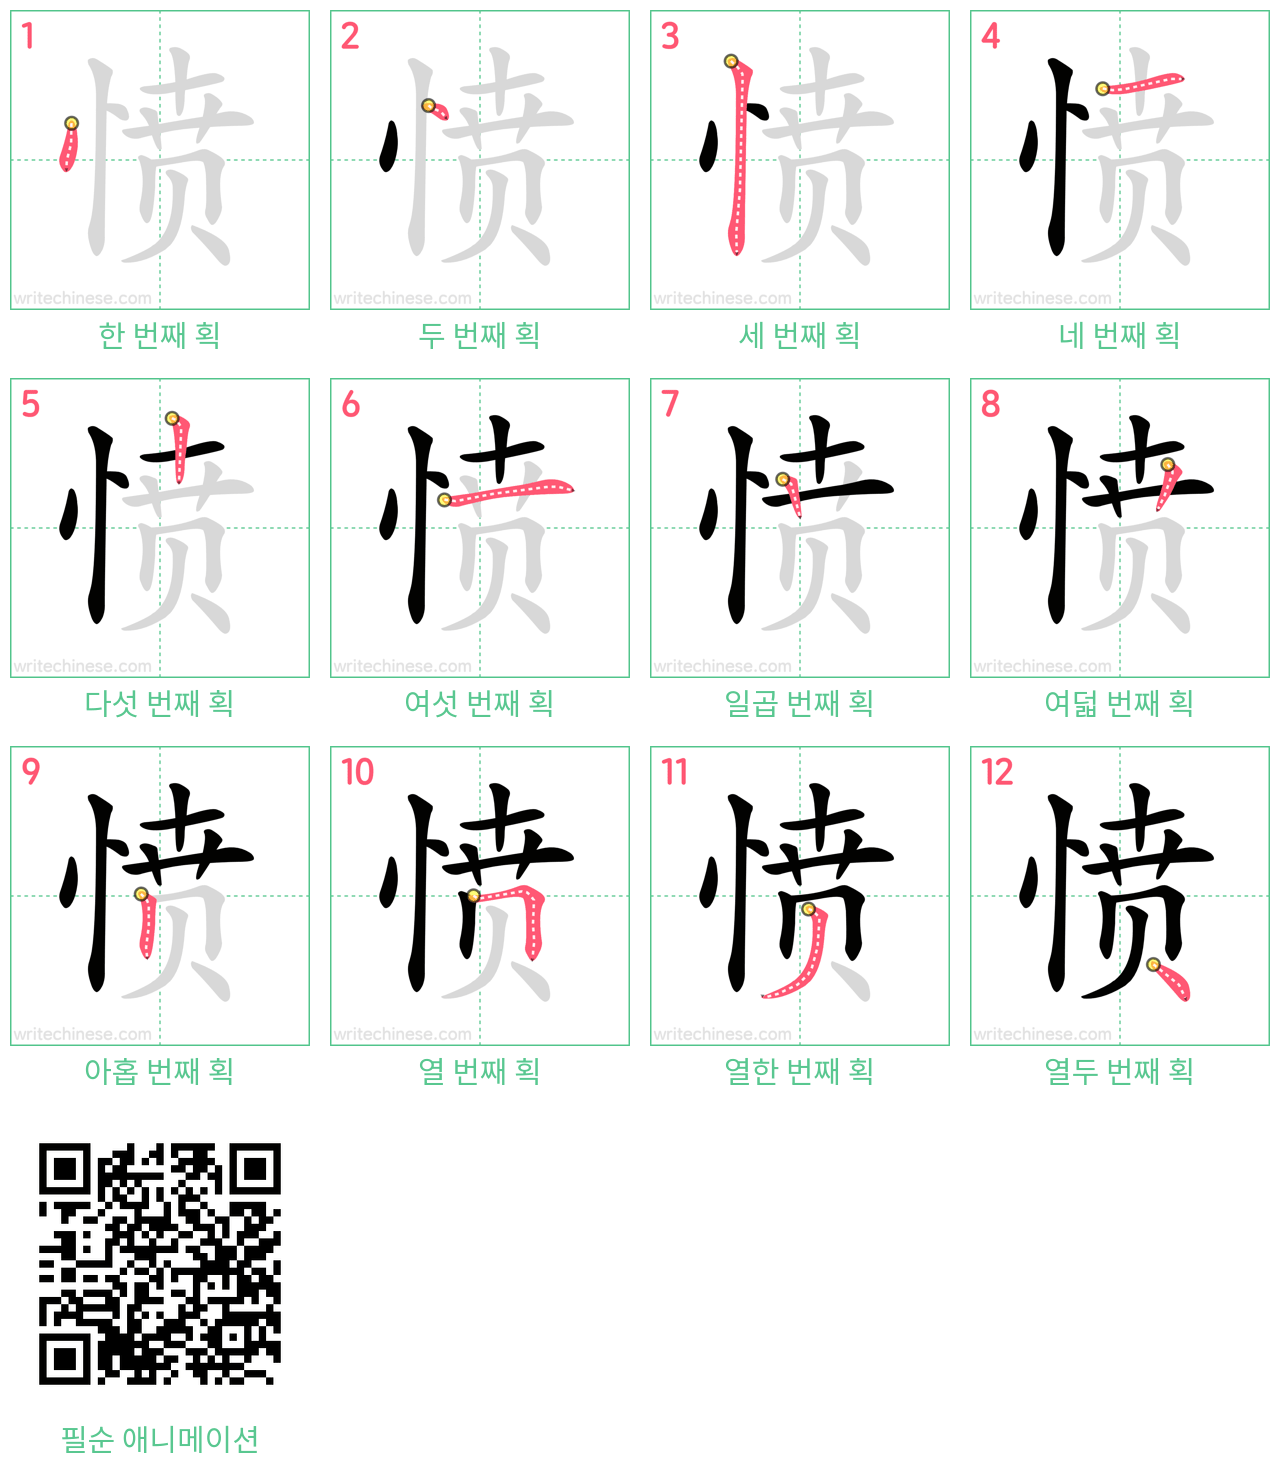 愤 step-by-step stroke order diagrams